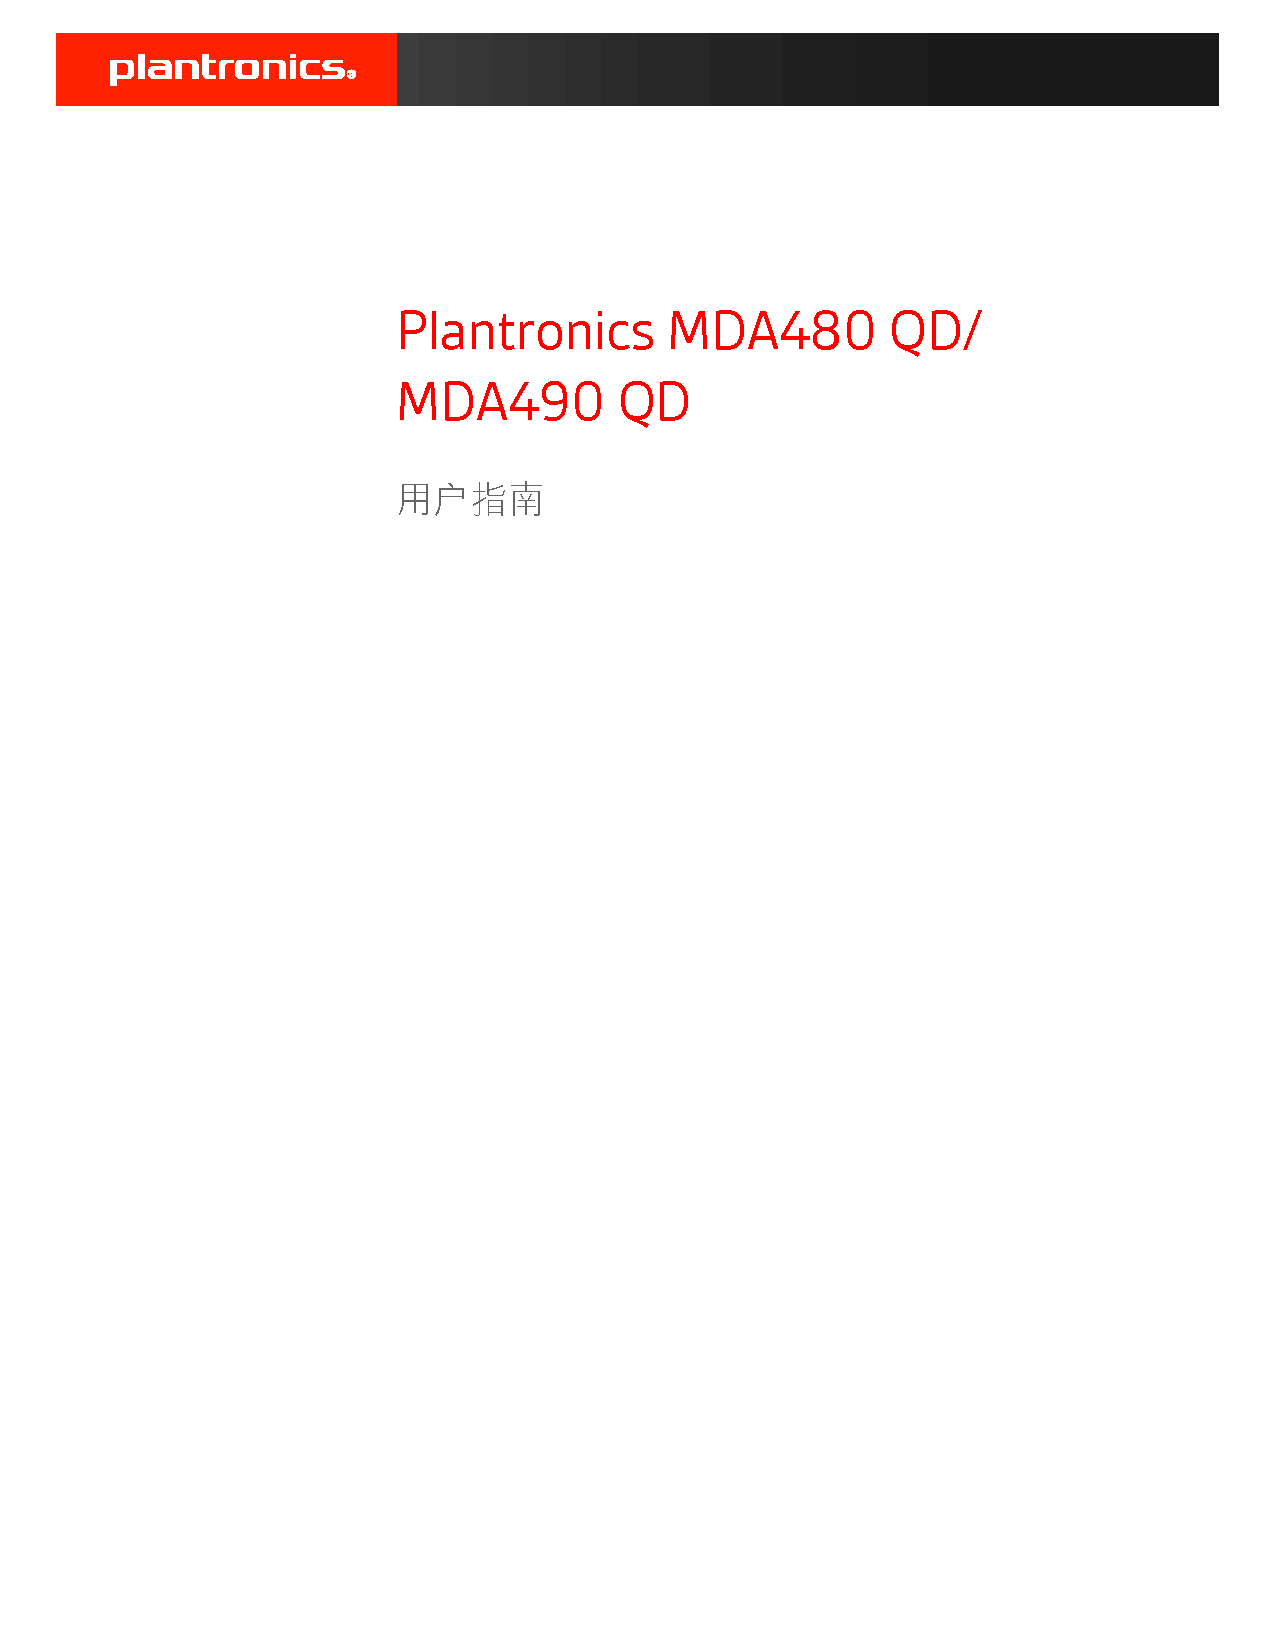 缤特力 Plantronics MDA480 QD 用户指南 封面